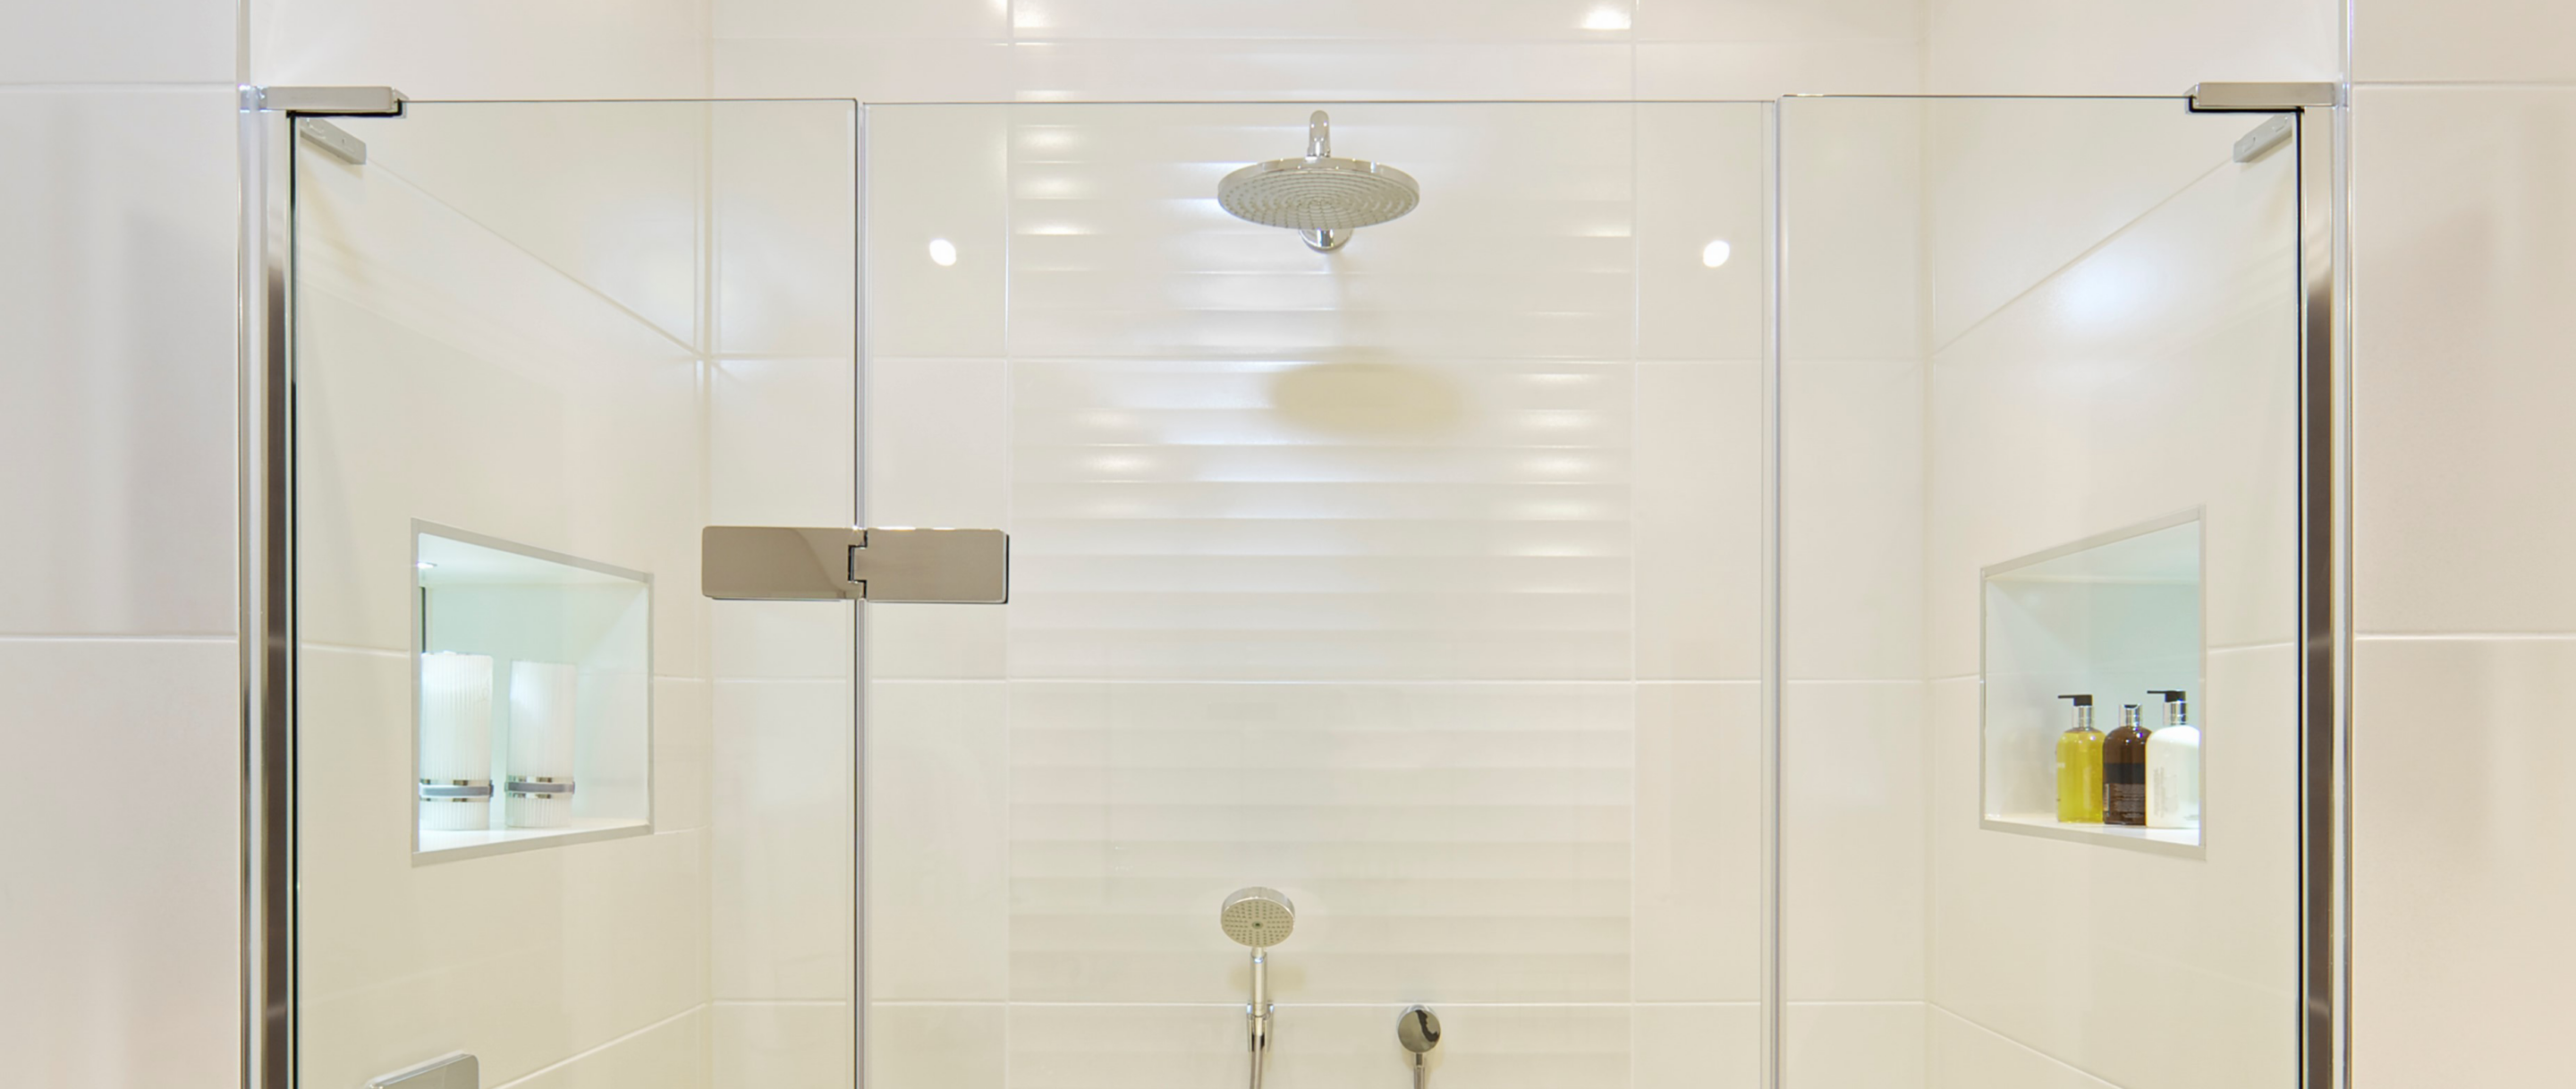 A+W Smart Shower - Duschen intelligent konstruieren und visualisieren